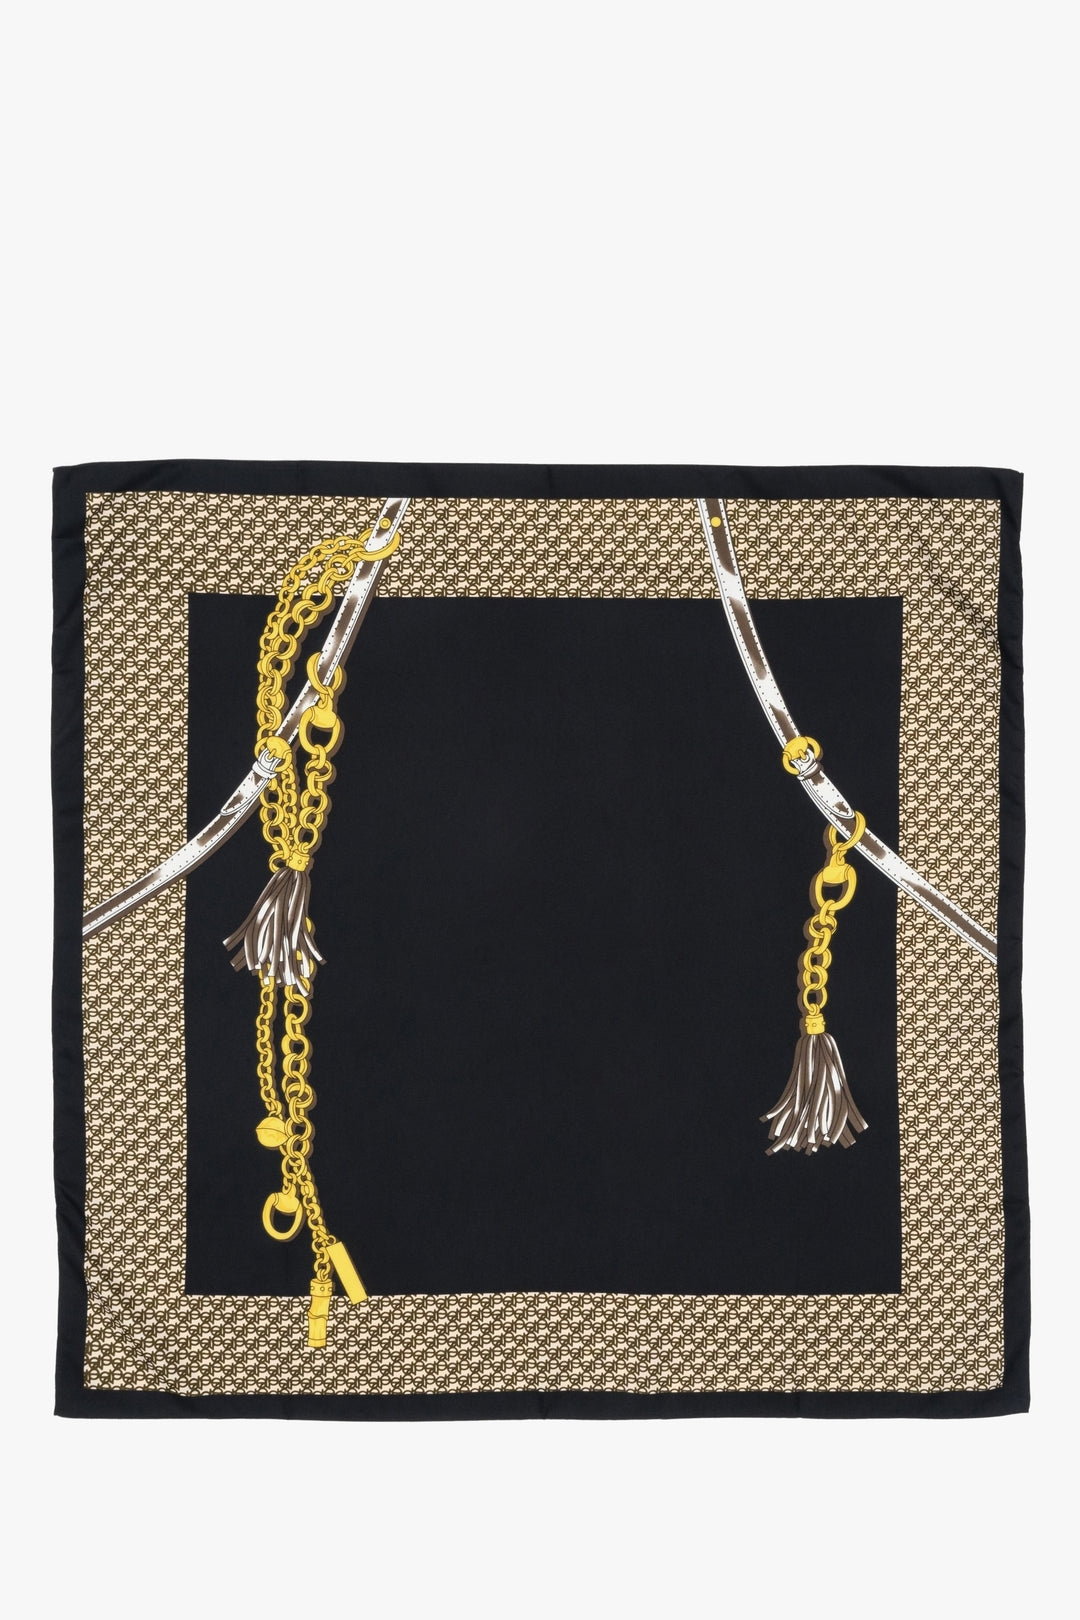 White-black-gold women's neckerchief by Estro.